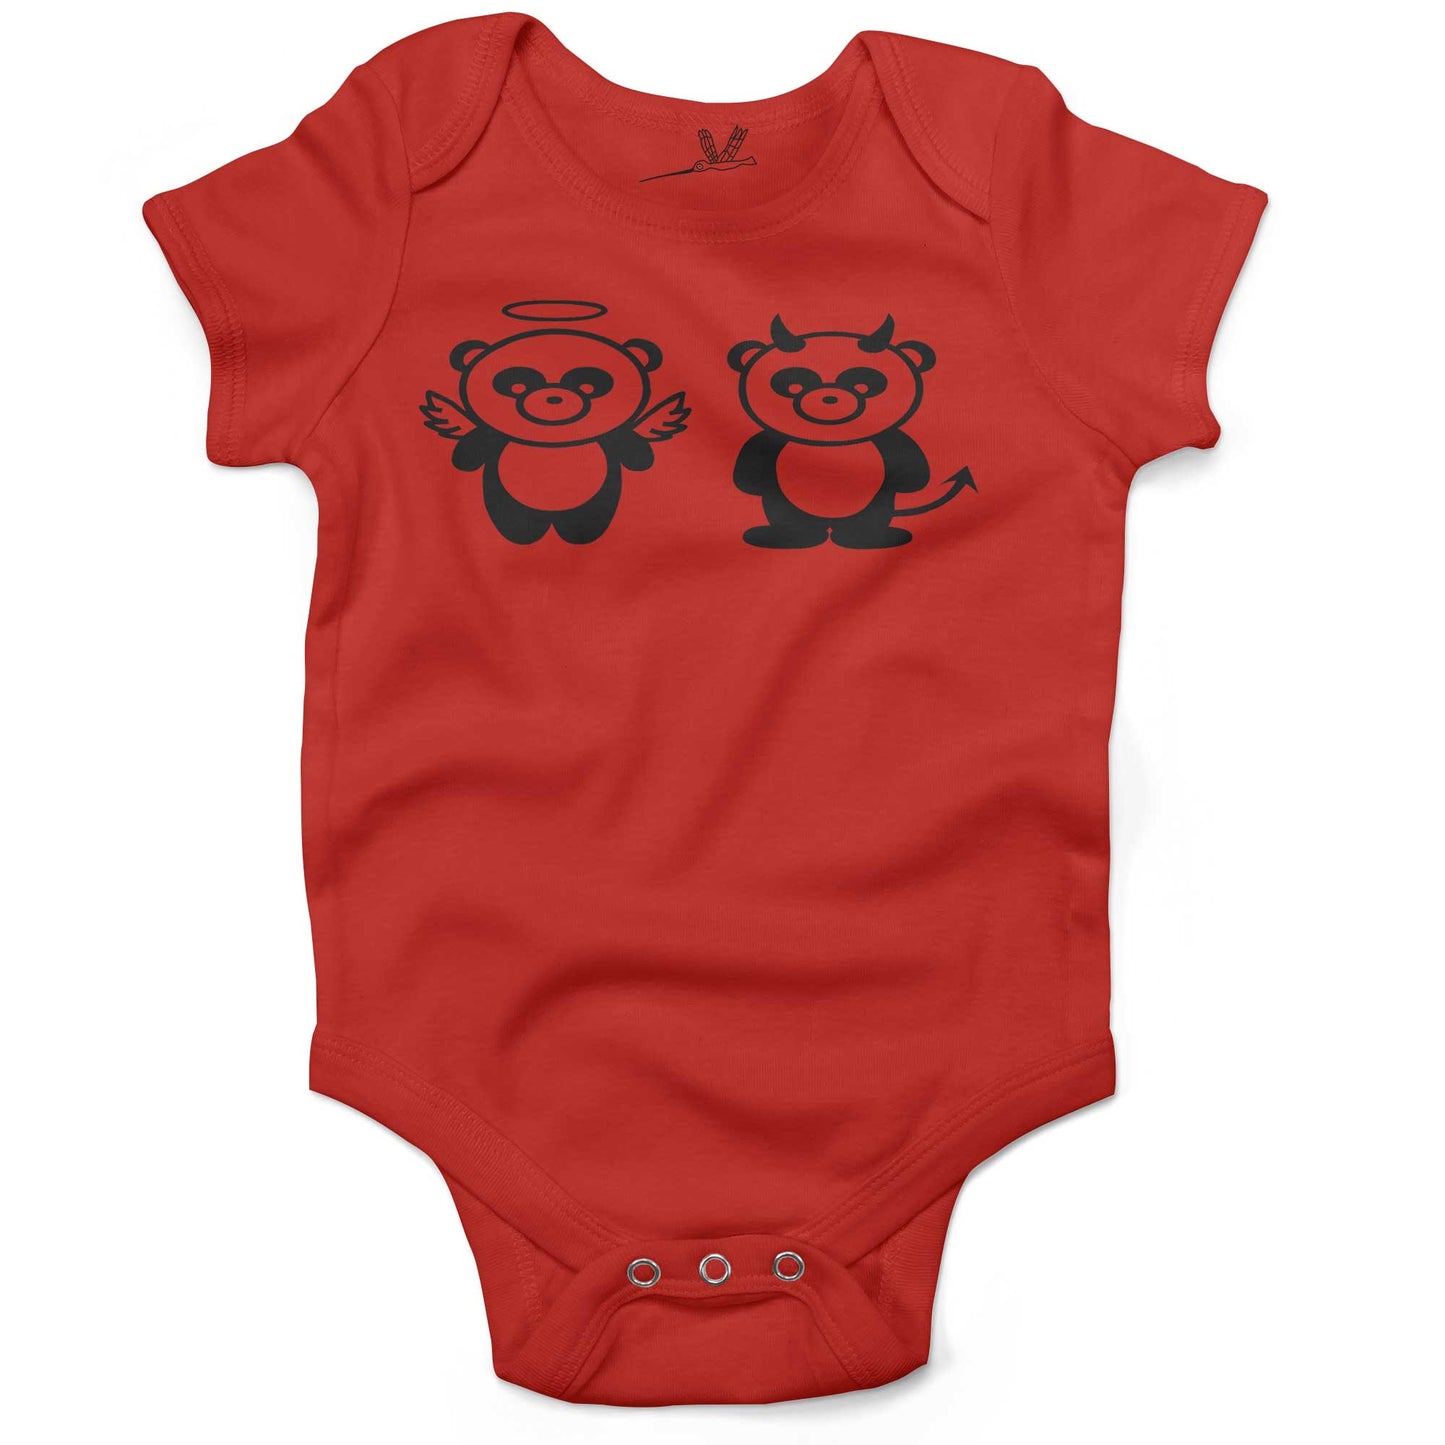 Good Panda, Bad Panda Infant Bodysuit or Raglan Tee-Organic Red-3-6 months